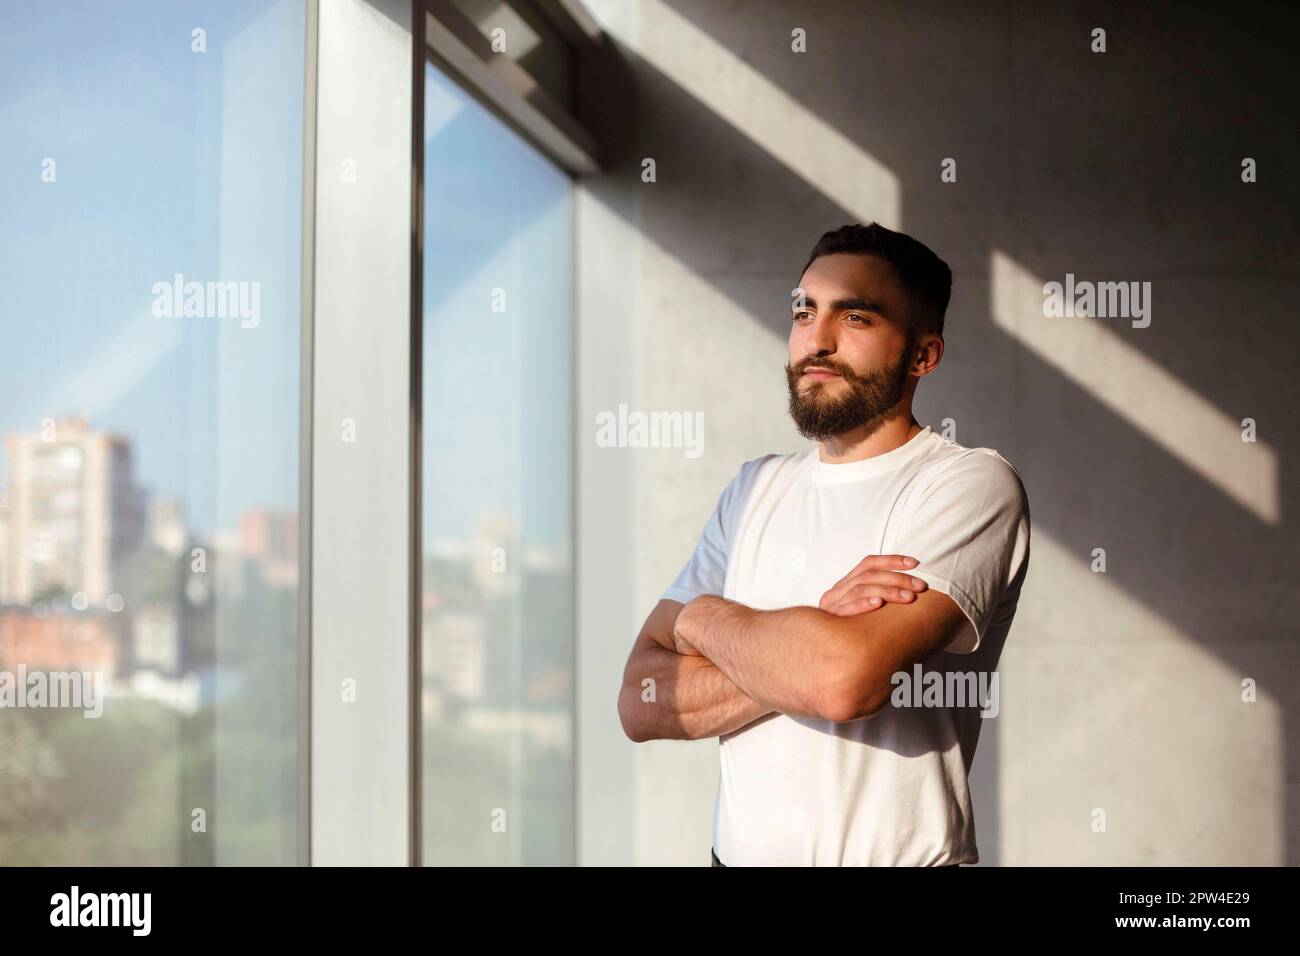 Uomo bearded in t shirt bianca guardando la macchina fotografica mentre si è in piedi vicino alla finestra in un ambiente di lavoro soleggiato loft Foto Stock